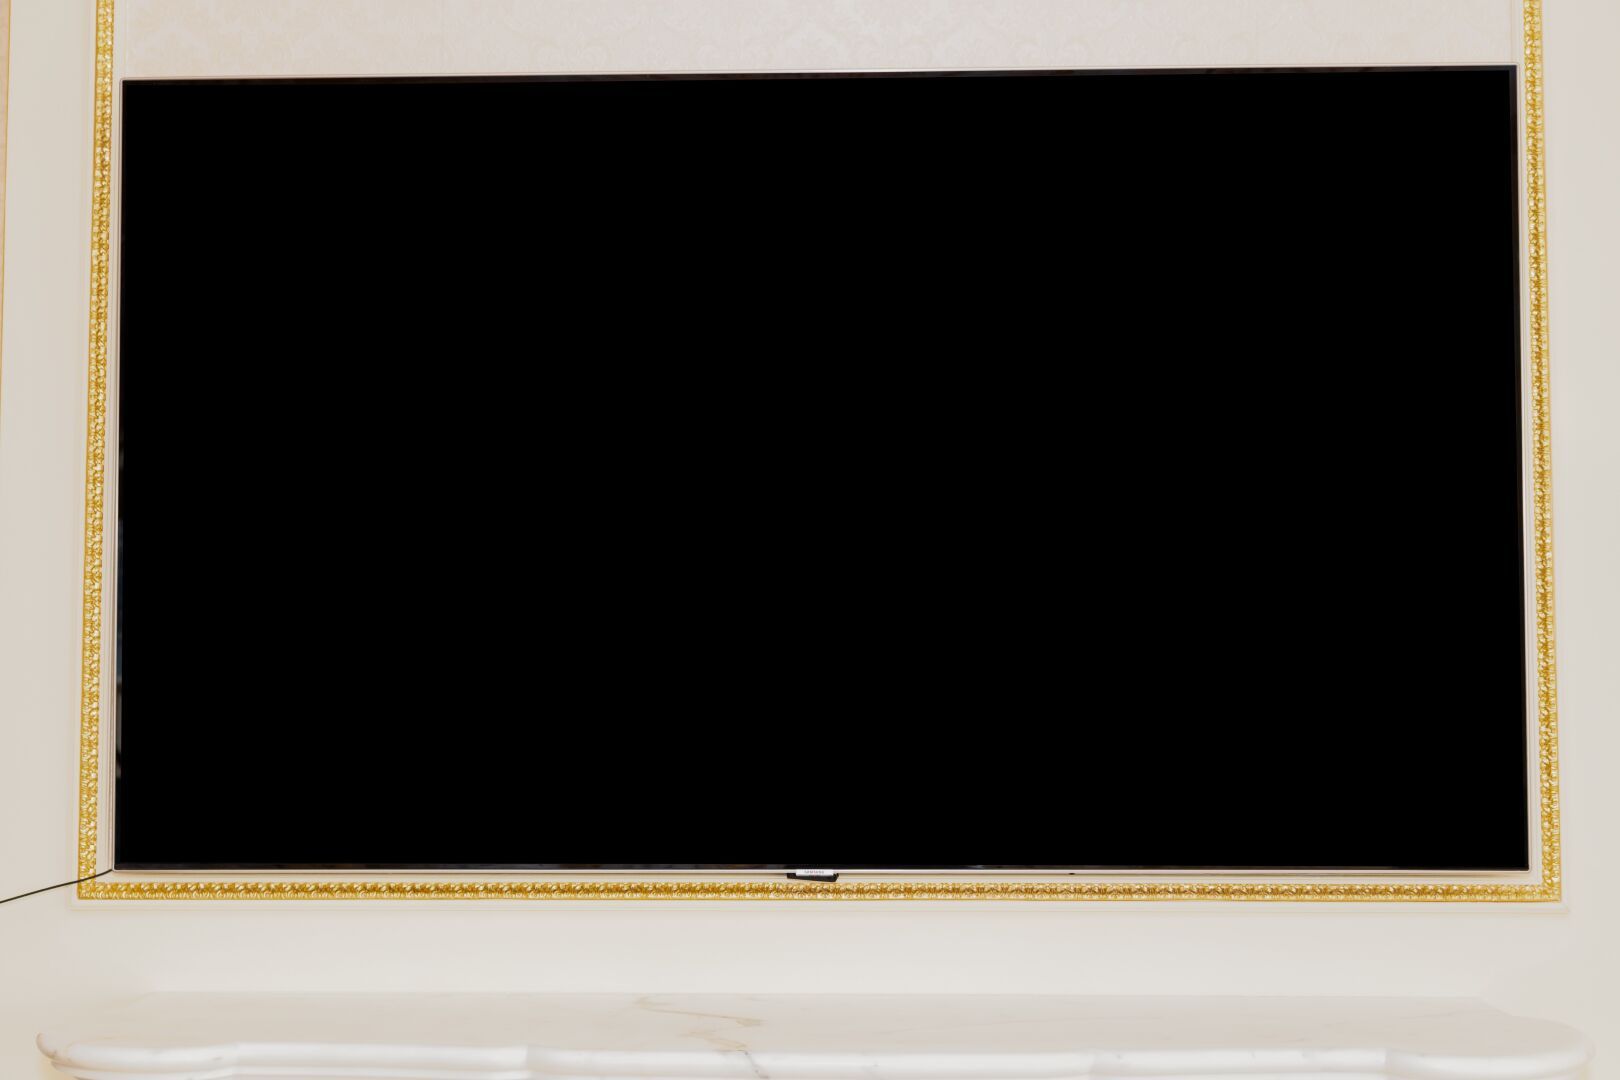 Null Grand téléviseur écran plat SAMSUNG QE75Q7FAMTXXC, 190 cm.

Version présumé&hellip;